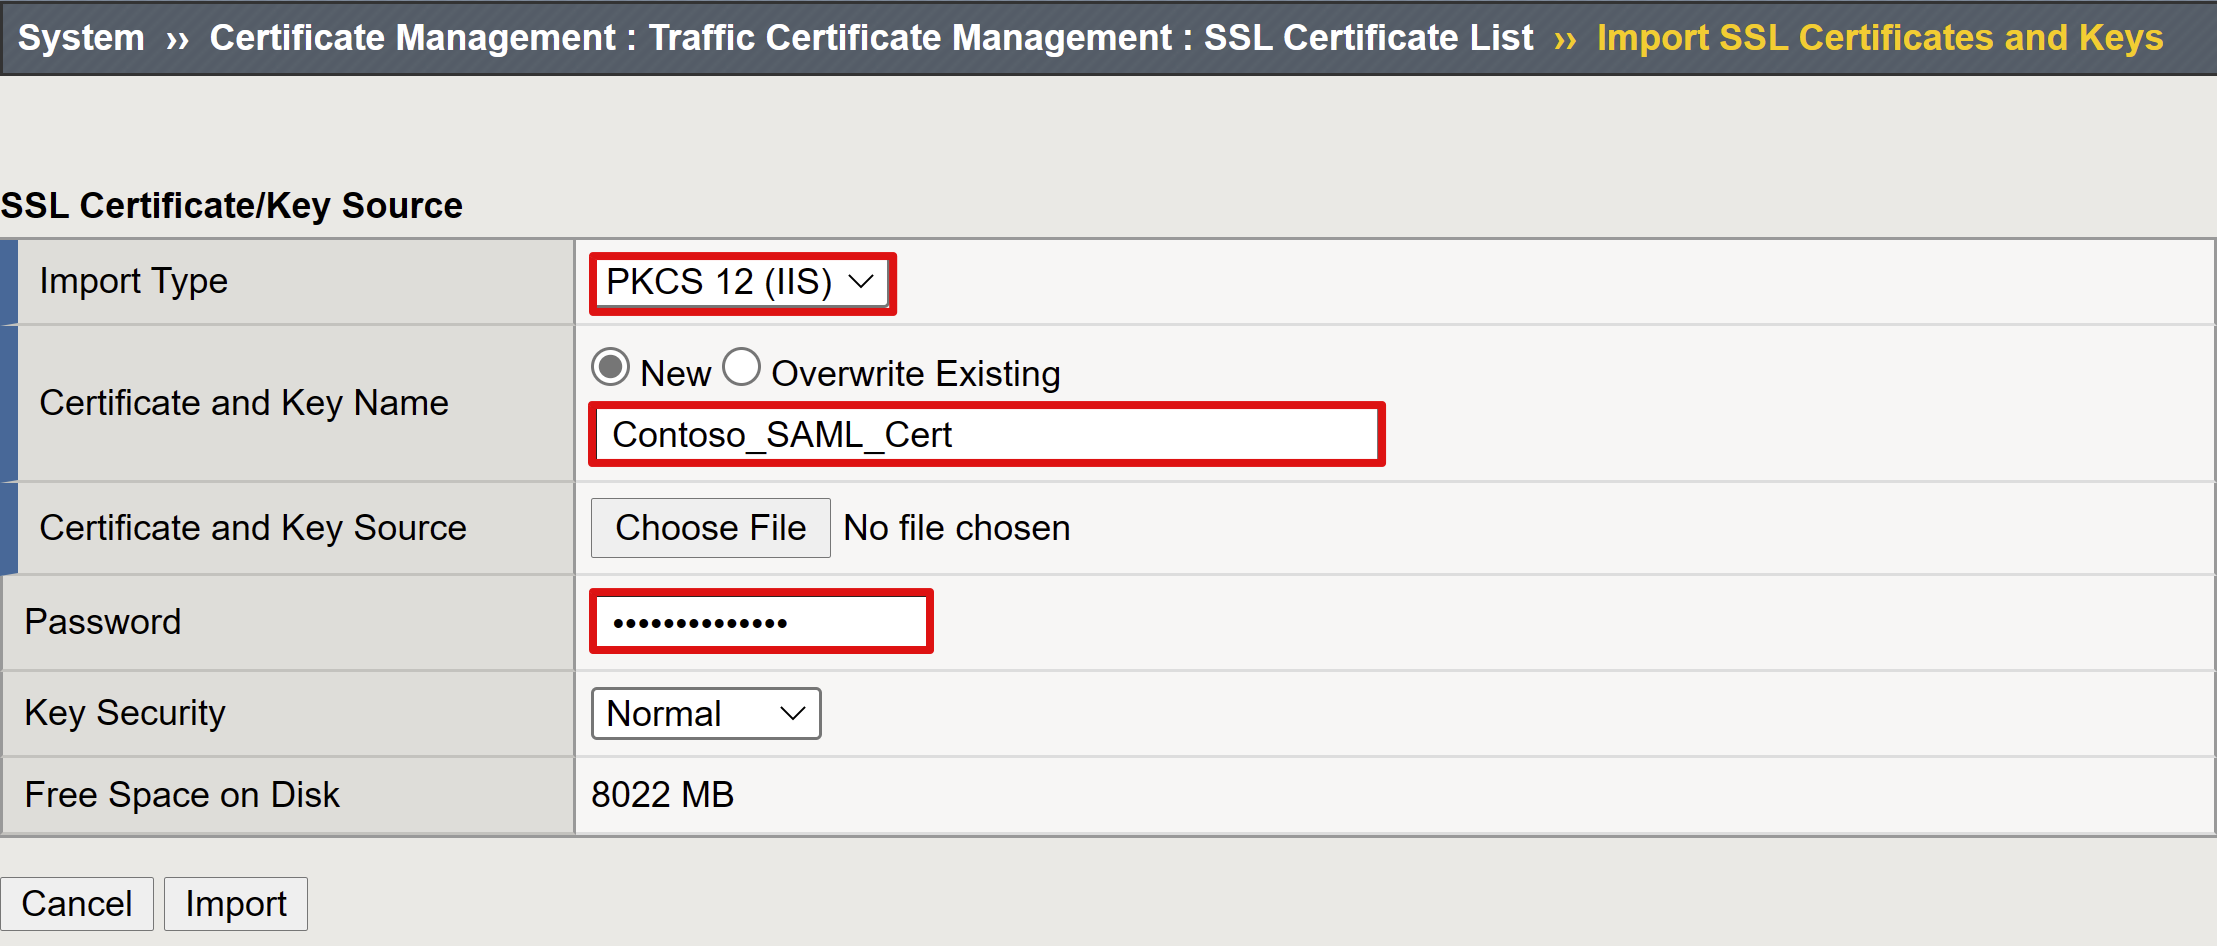 Captura de tela das opções e seleções do certificado SSL e da Fonte de Chave